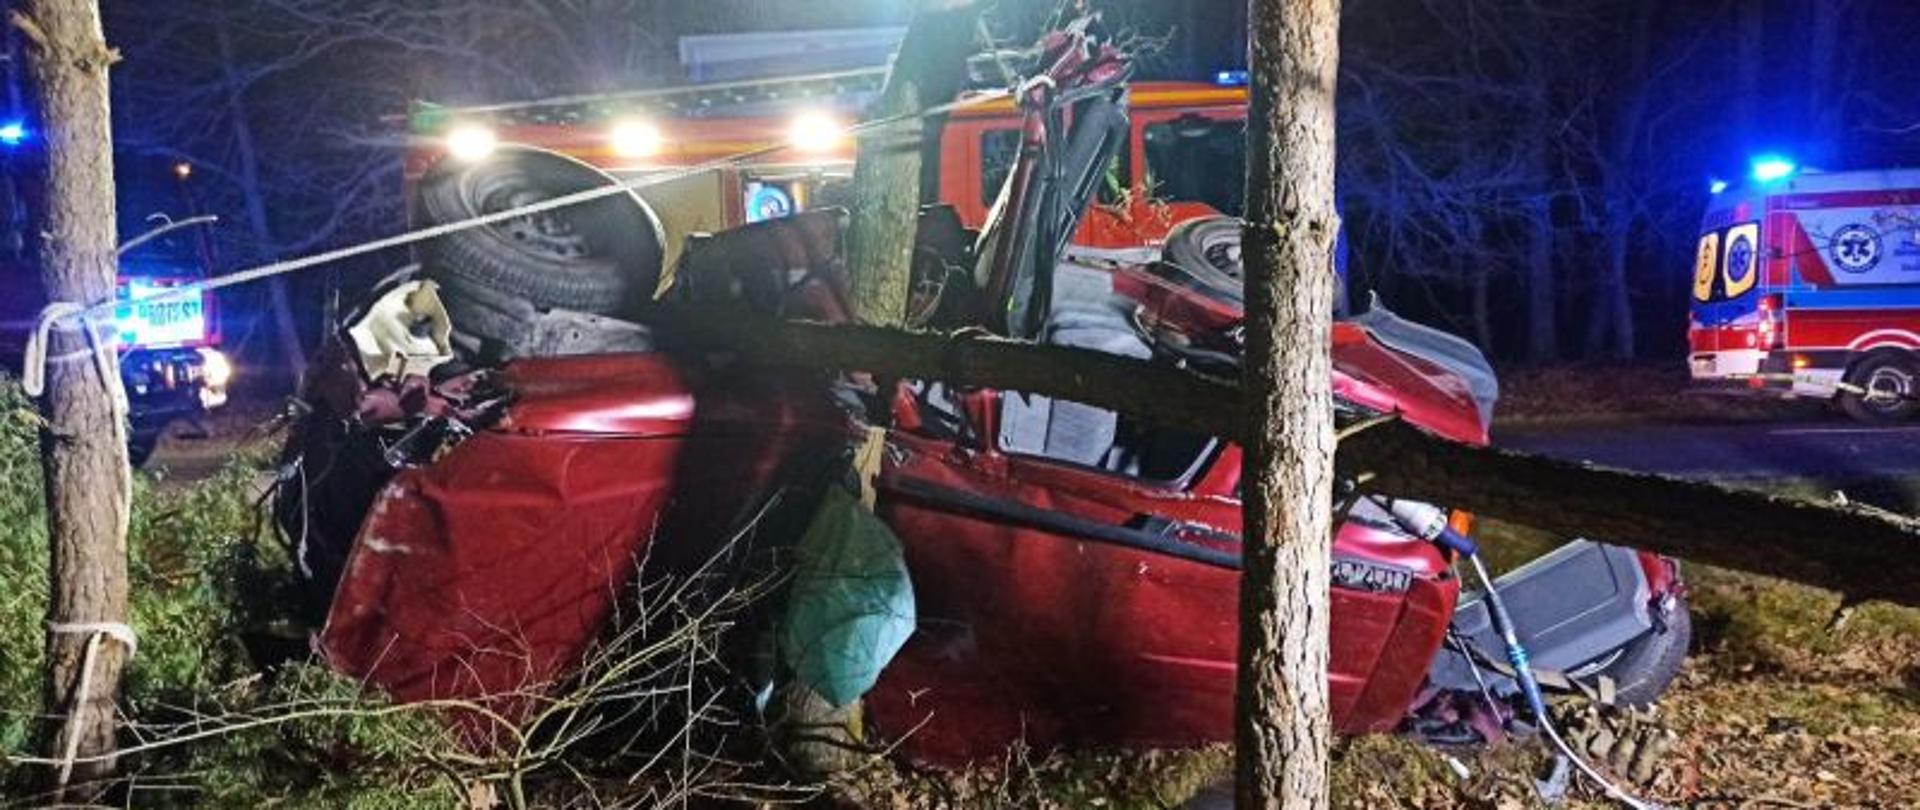 Zdjęcie przedstawia leżące na boku auto. Auto koloru czerwonego. Jest wbite dachem w drzewo. W tle pojazdy służb ratunkowych. Zdjęcie wykonane w nocy.